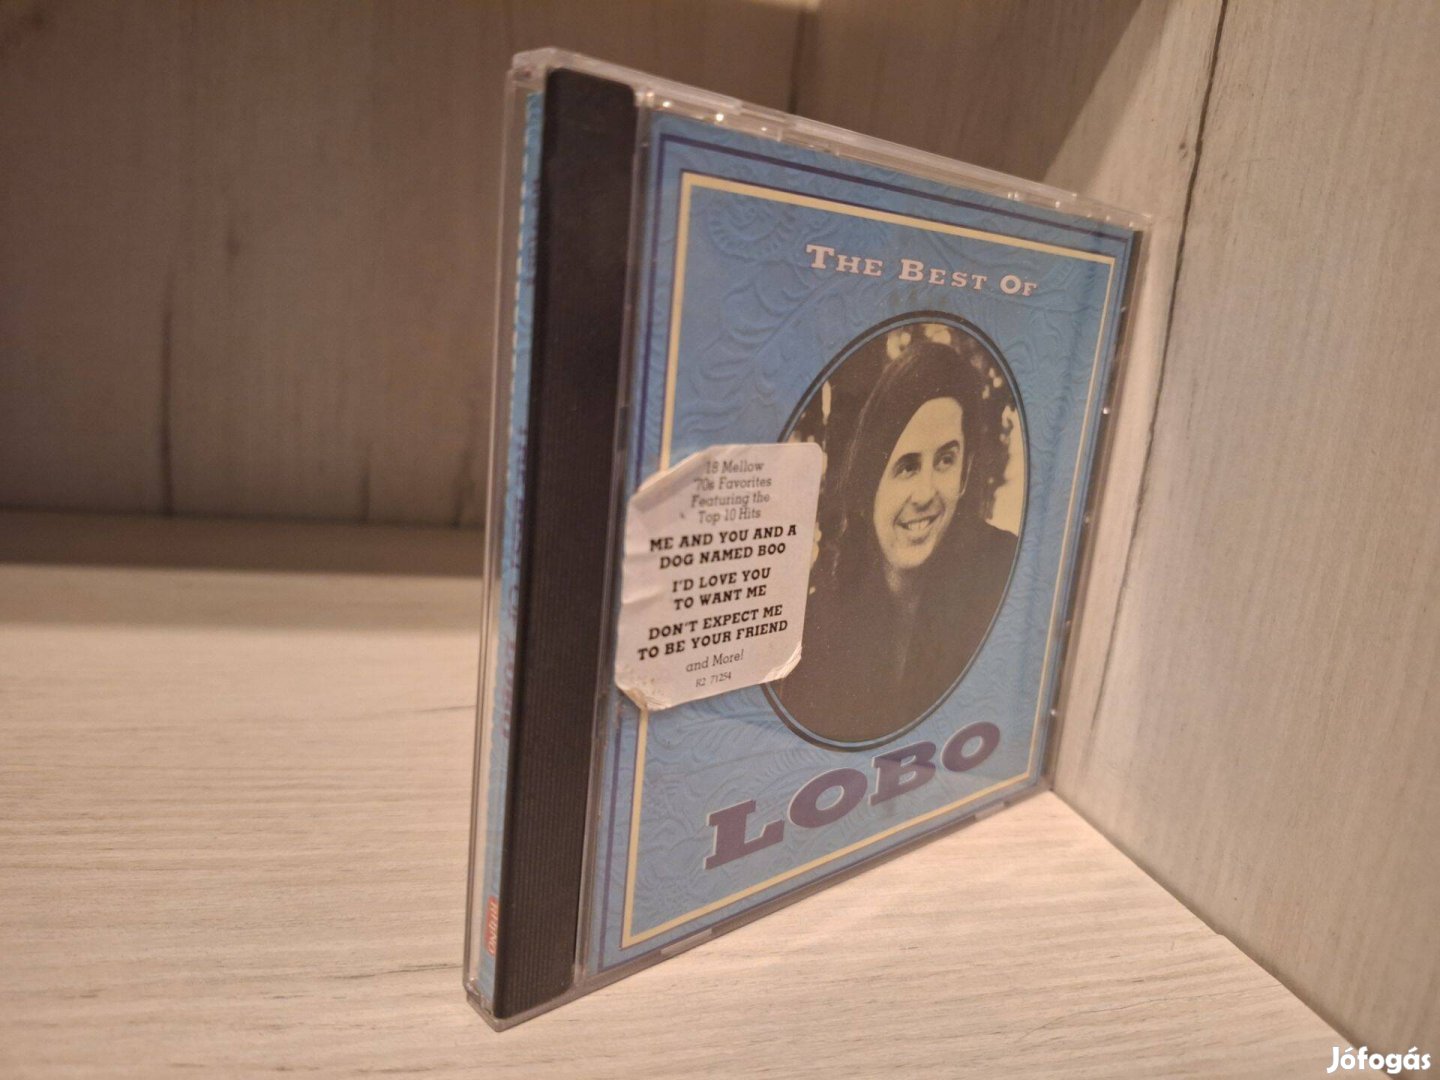 Lobo - The Best Of CD